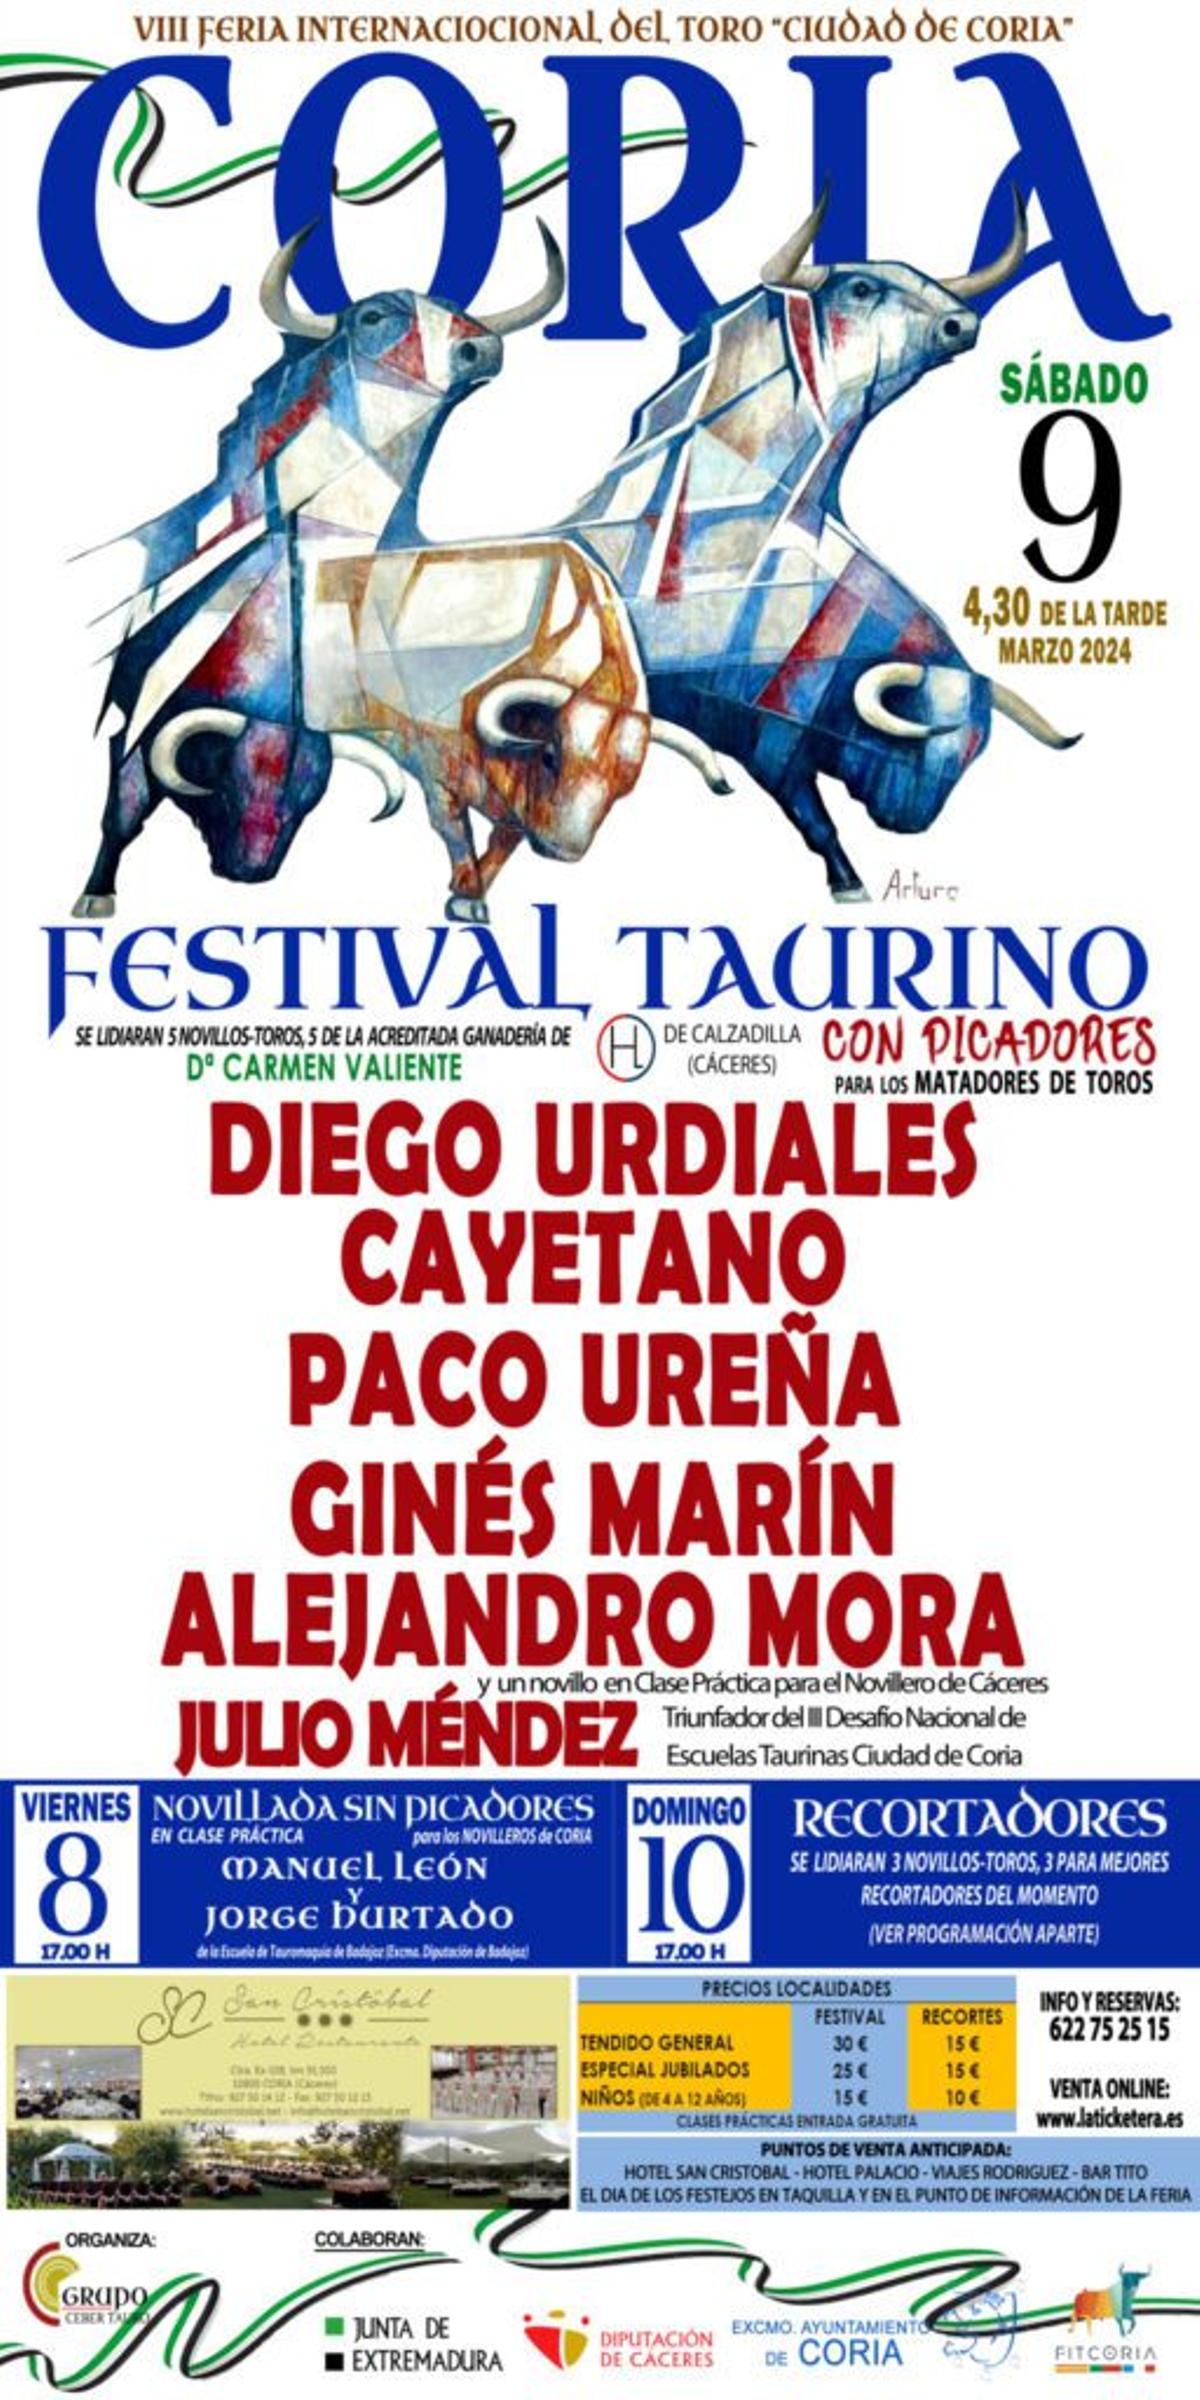 Cartel de la VIII Feria Internacional del Toro Ciudad de Coria.